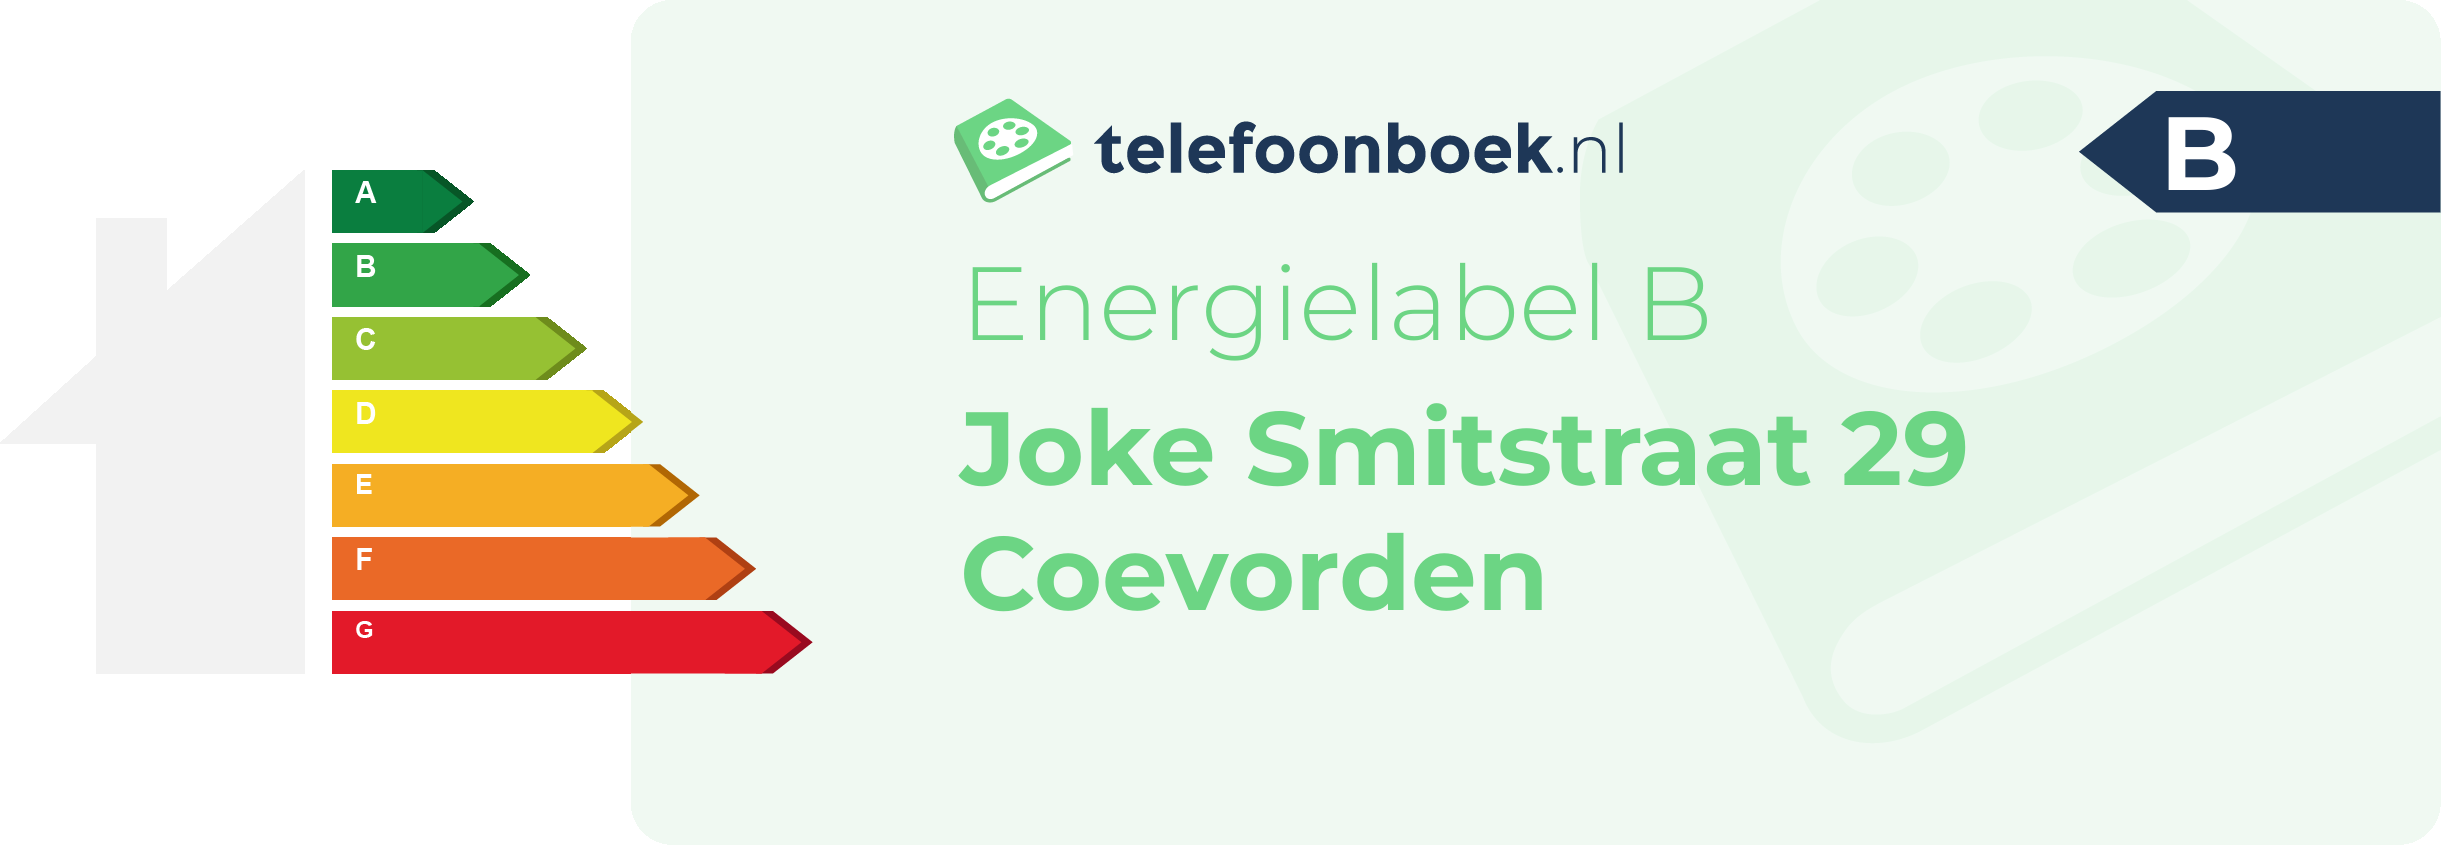 Energielabel Joke Smitstraat 29 Coevorden